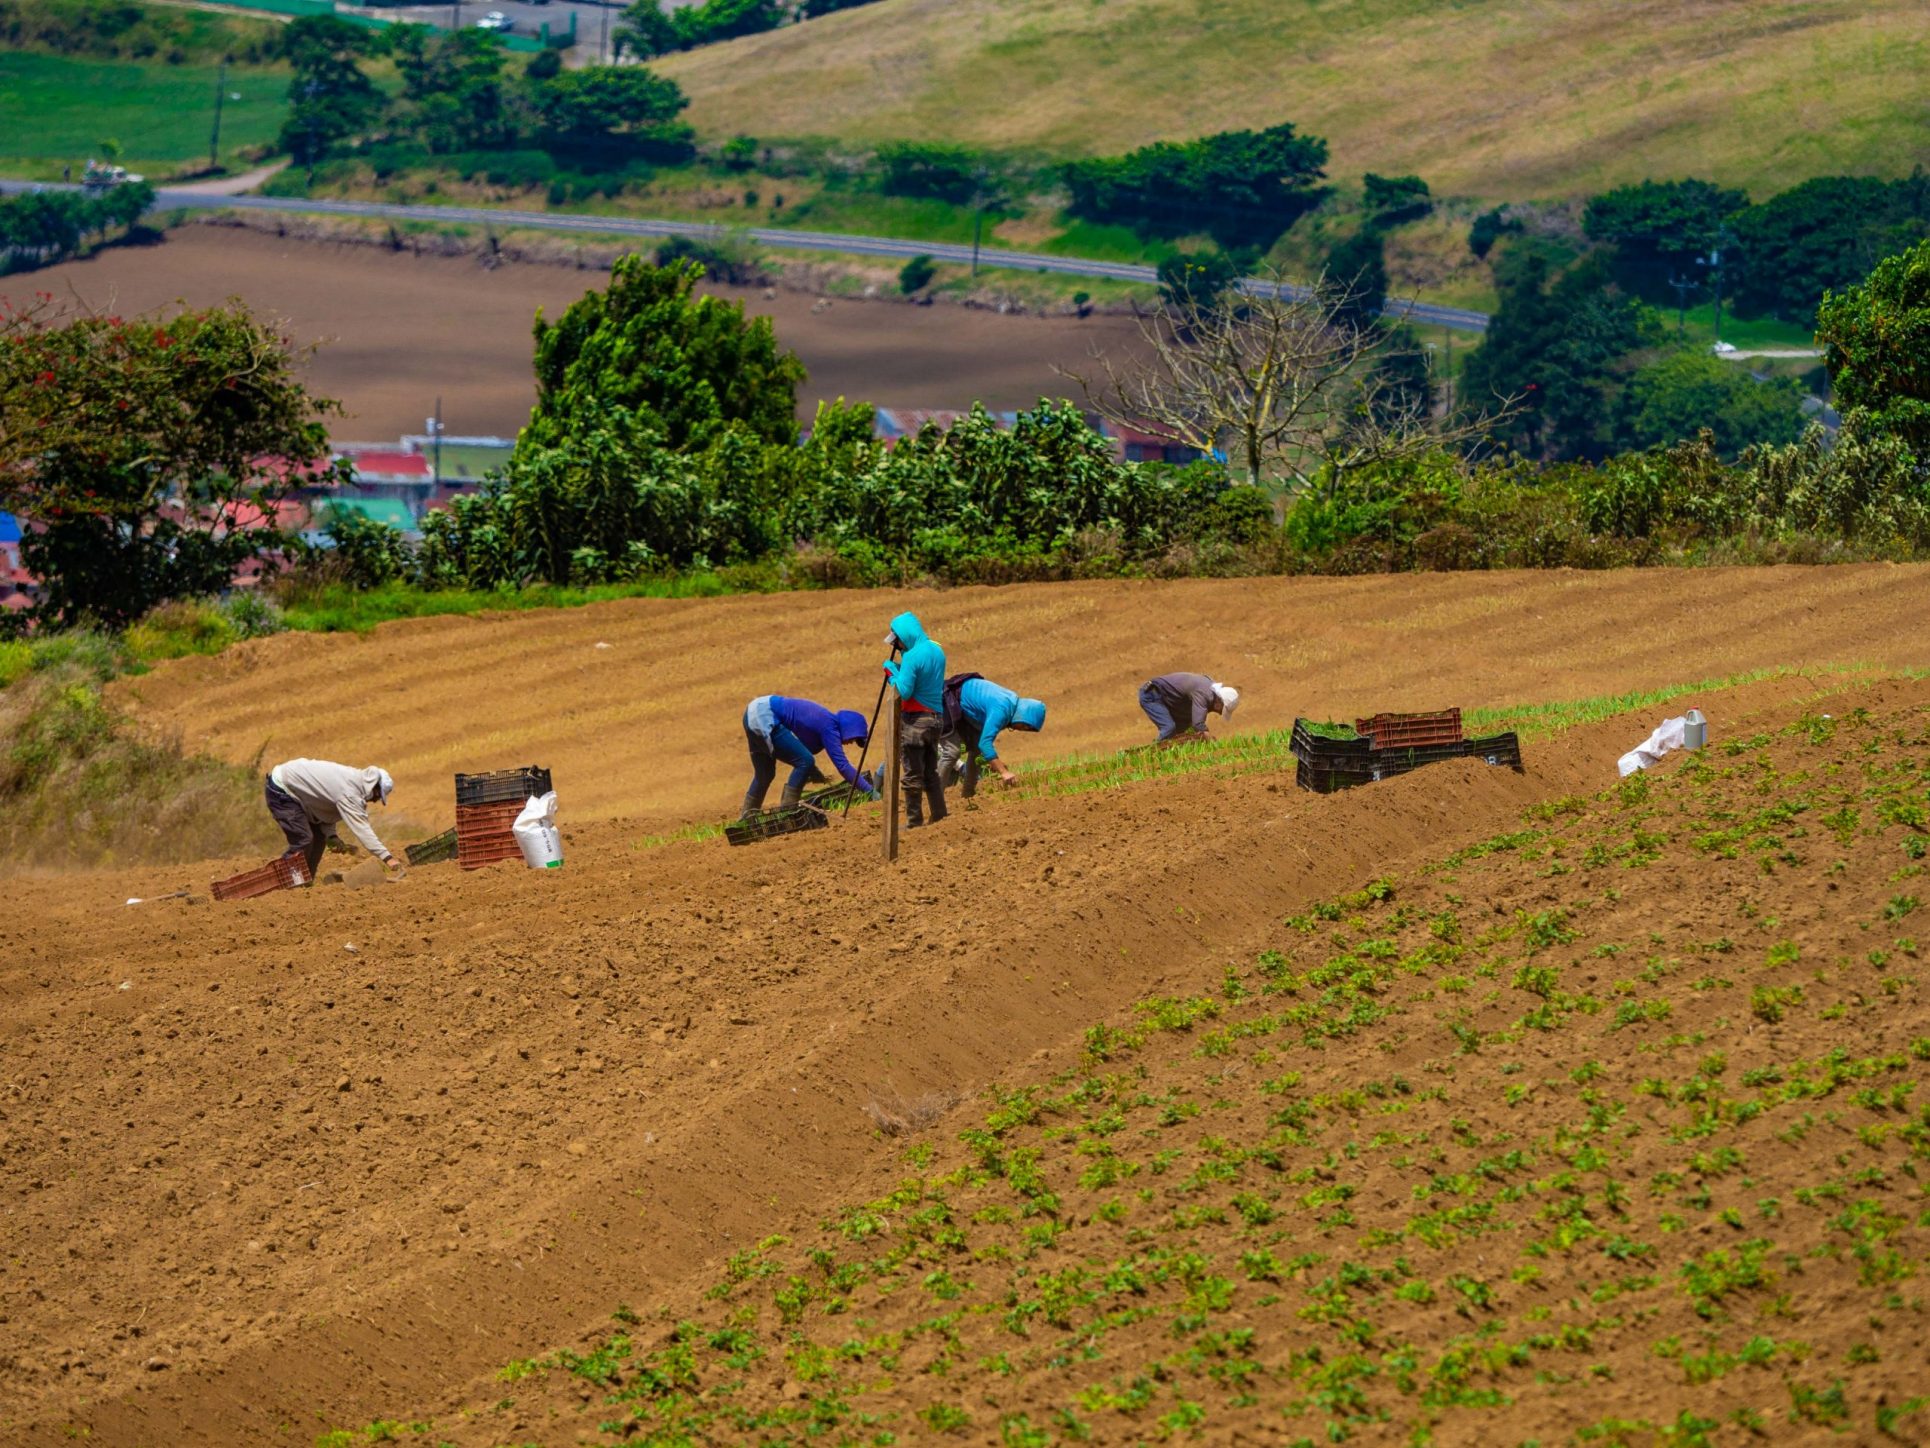 Alto costo y escasez de fertilizantes ponen en riesgo producción agrícola de Costa Rica